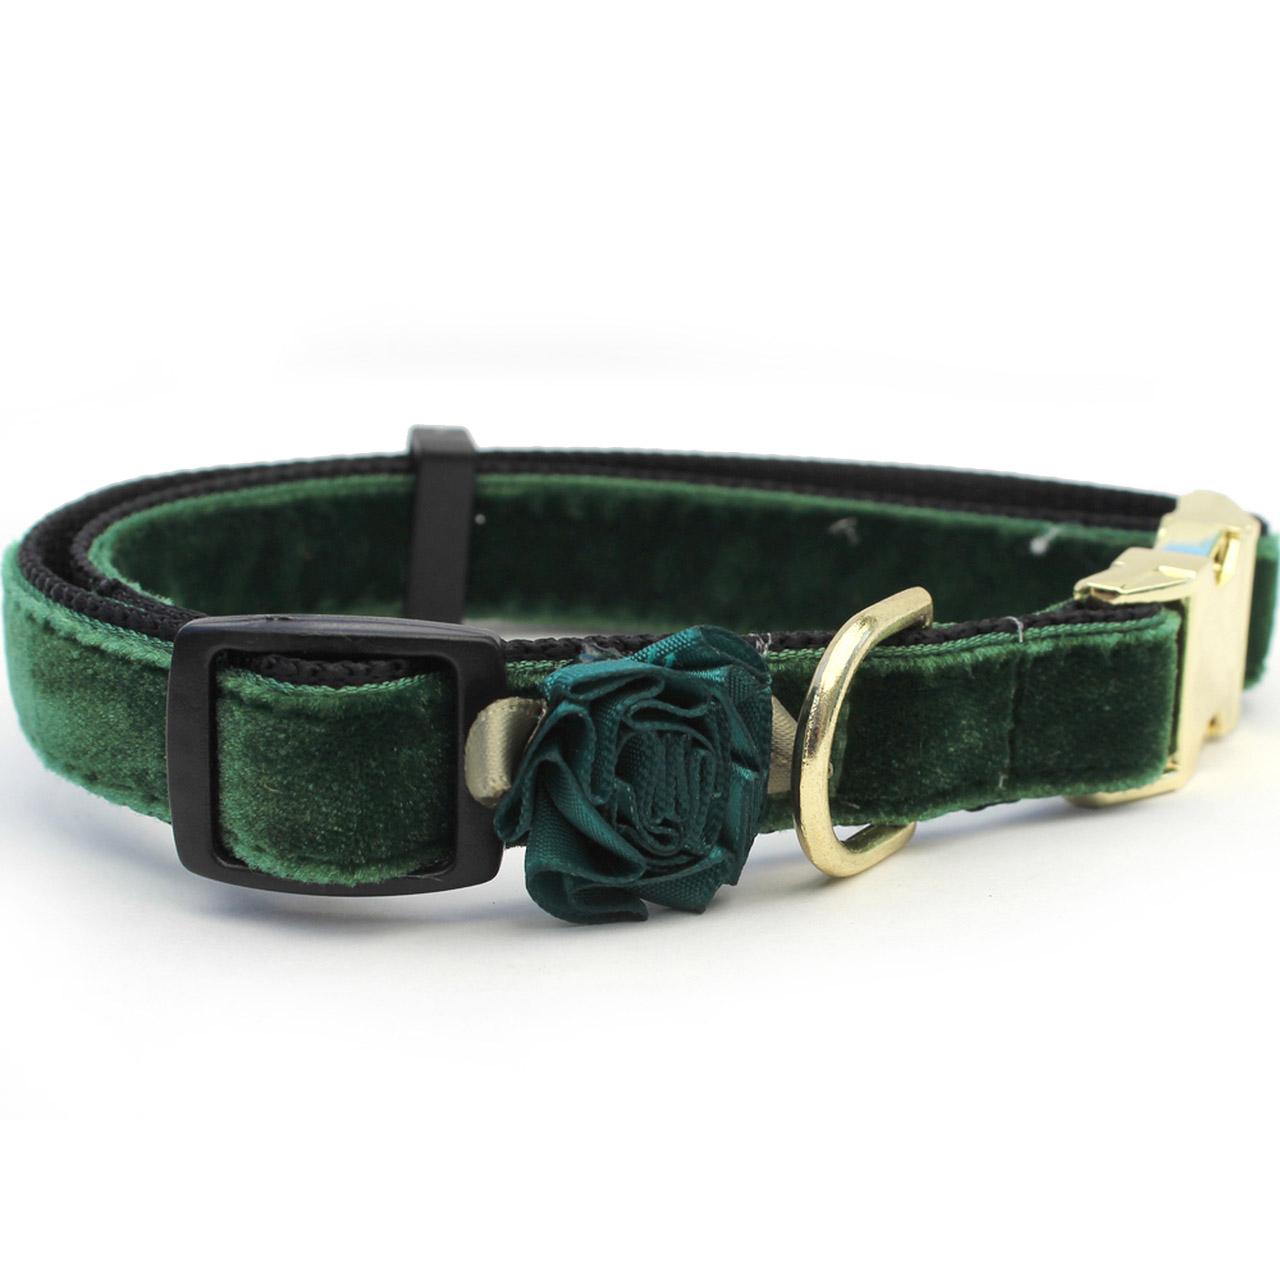 Diva Dog Mistletoe Velvet Dog Collar - Pine Green